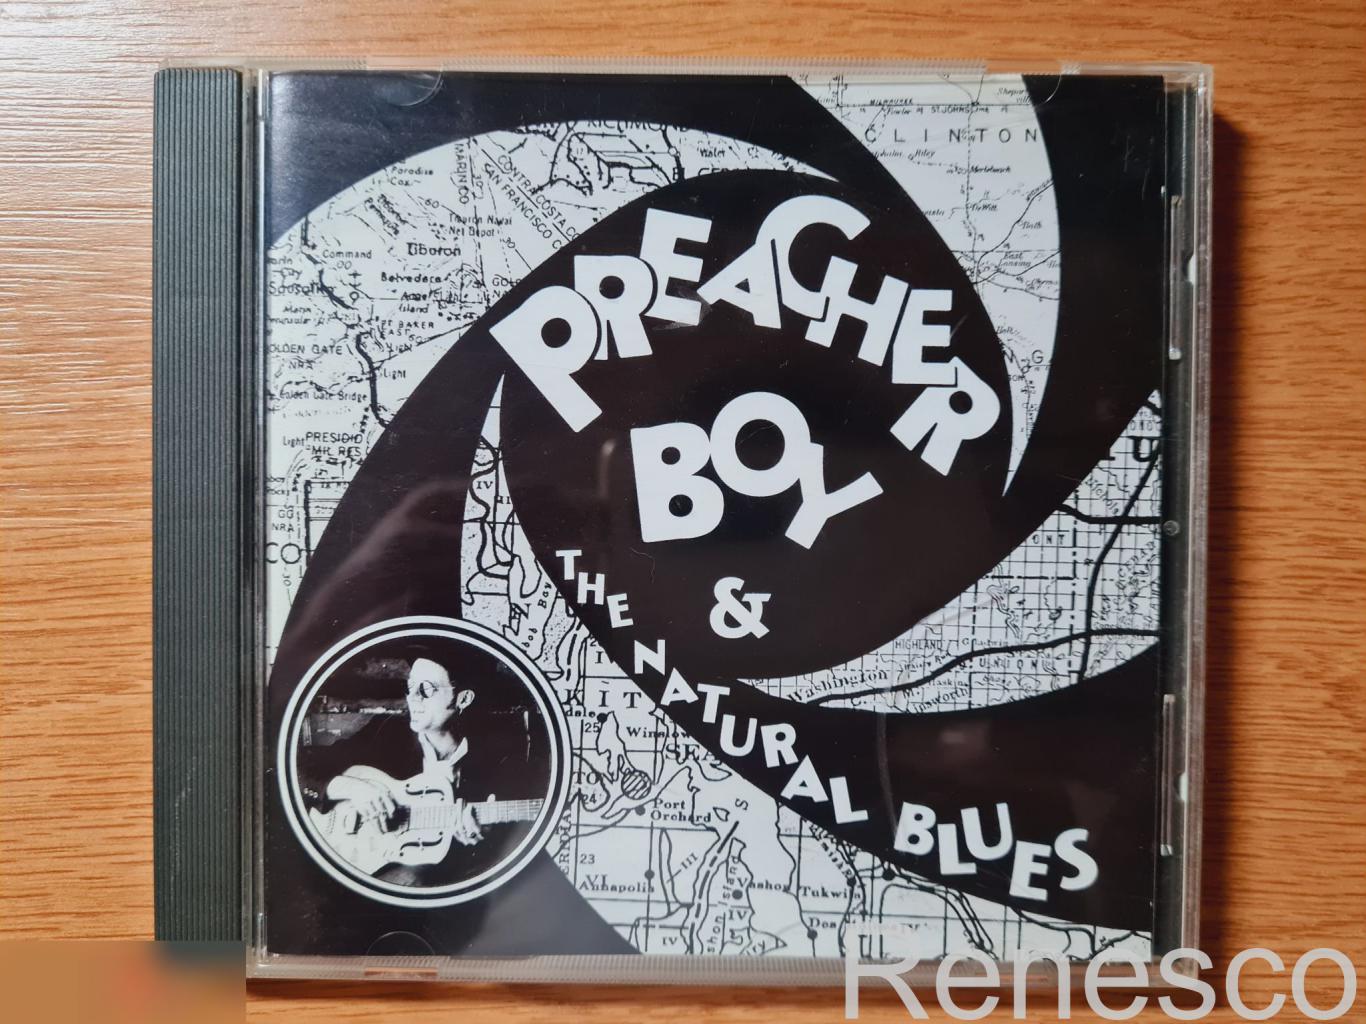 Preacher Boy – Preacher Boy & The Natural Blues (USA) (1995)